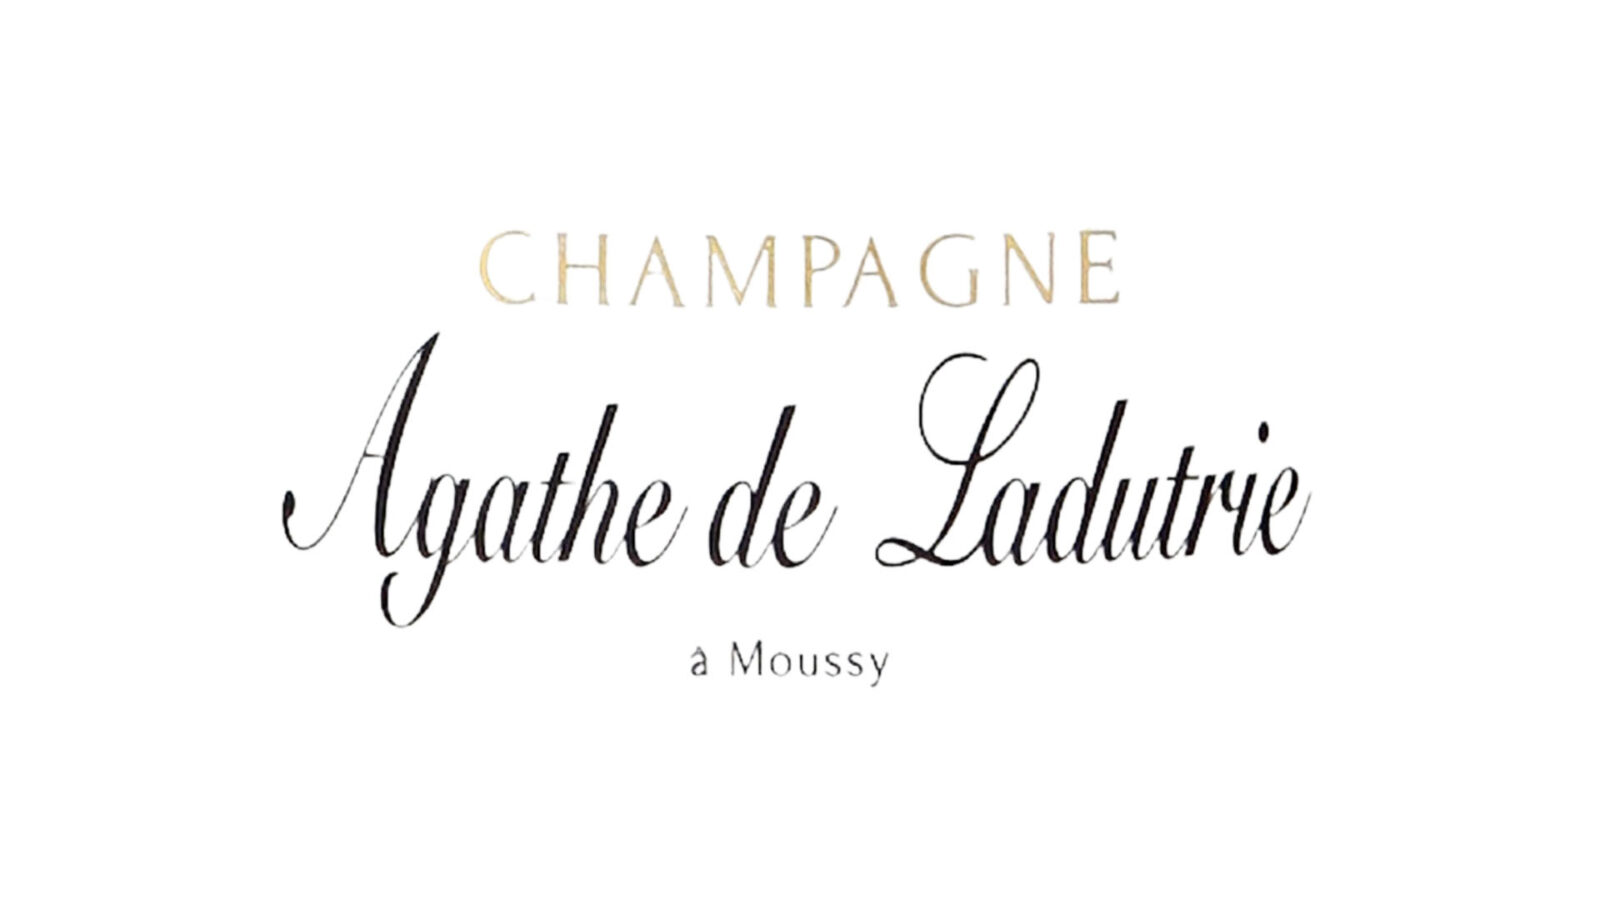 Champagne Agathe de Ladutrie